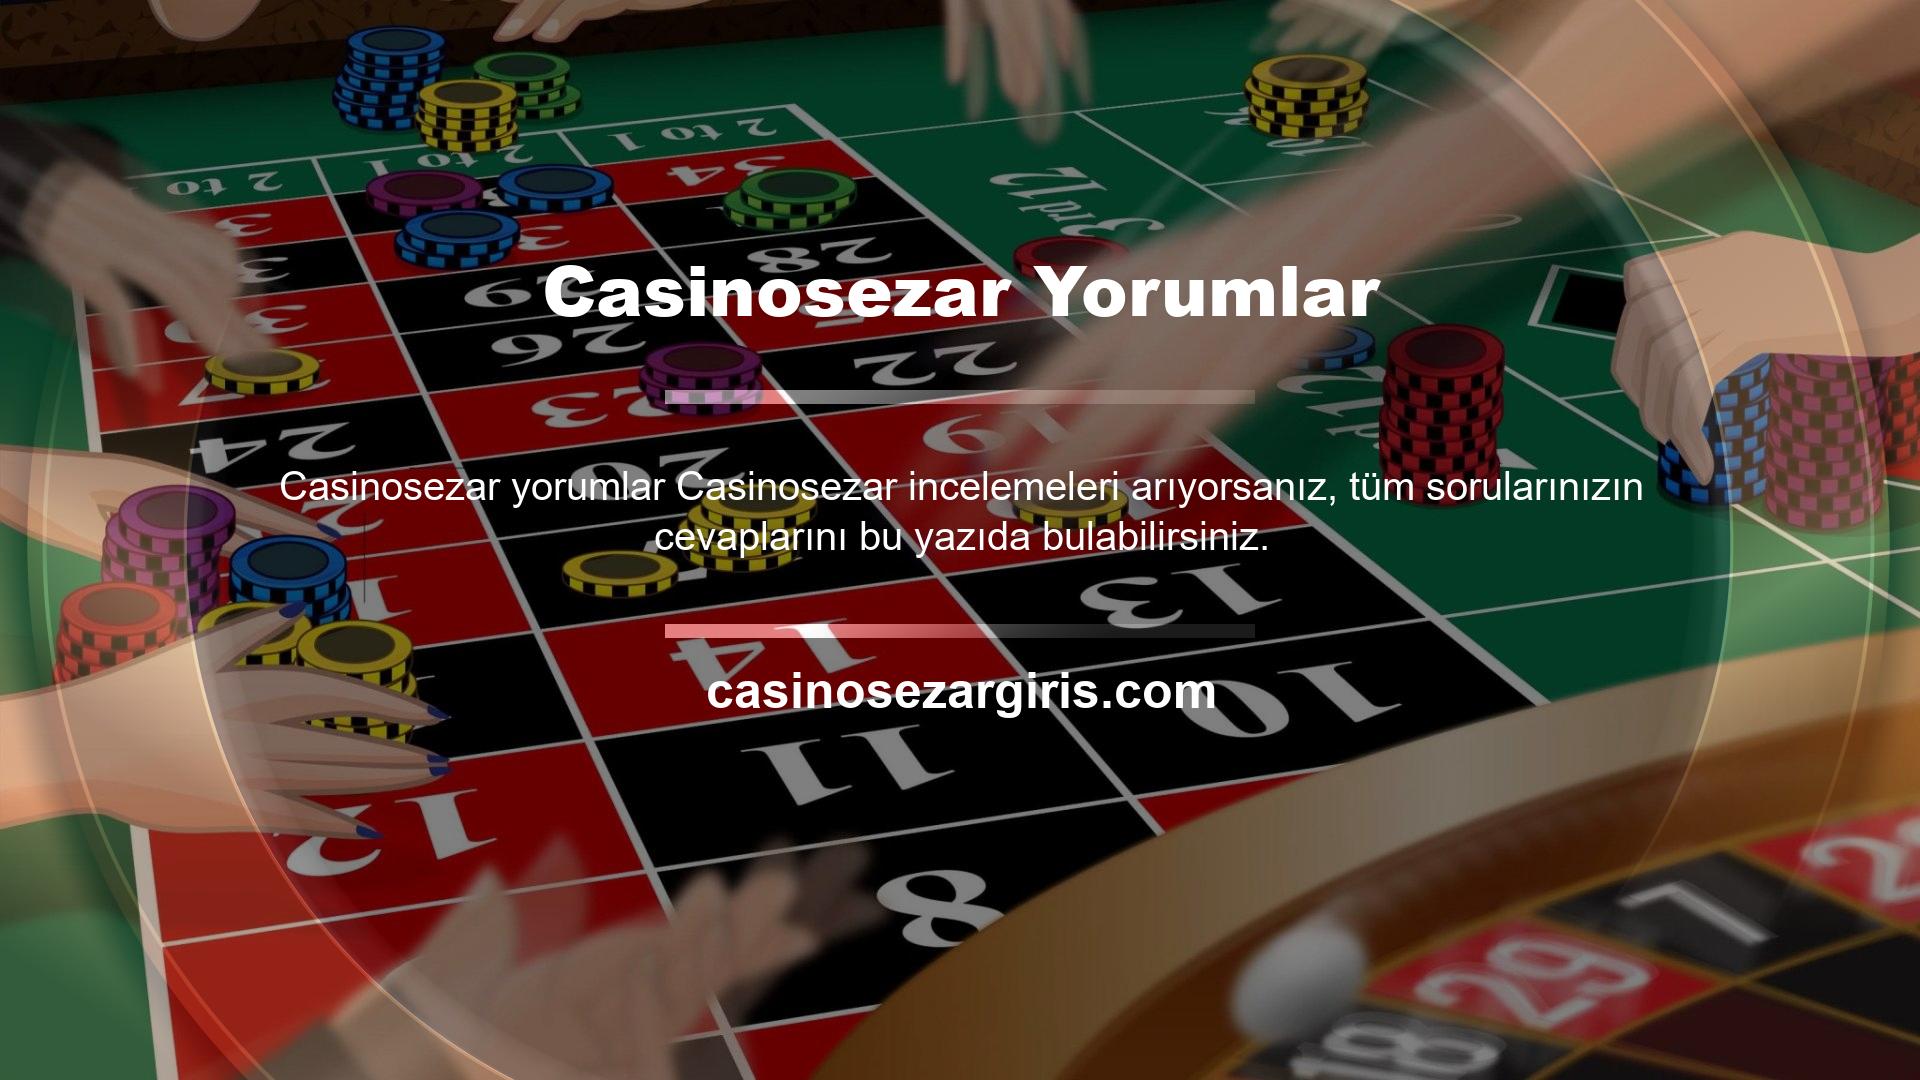 Casinosezar gibi bahis siteleri pek çok farklı kategoride faaliyet gösterirken canlı casino oyunlarının son zamanlarda artan değeri en çok sorgulanan ve üzerinde çalışılanlardan biridir